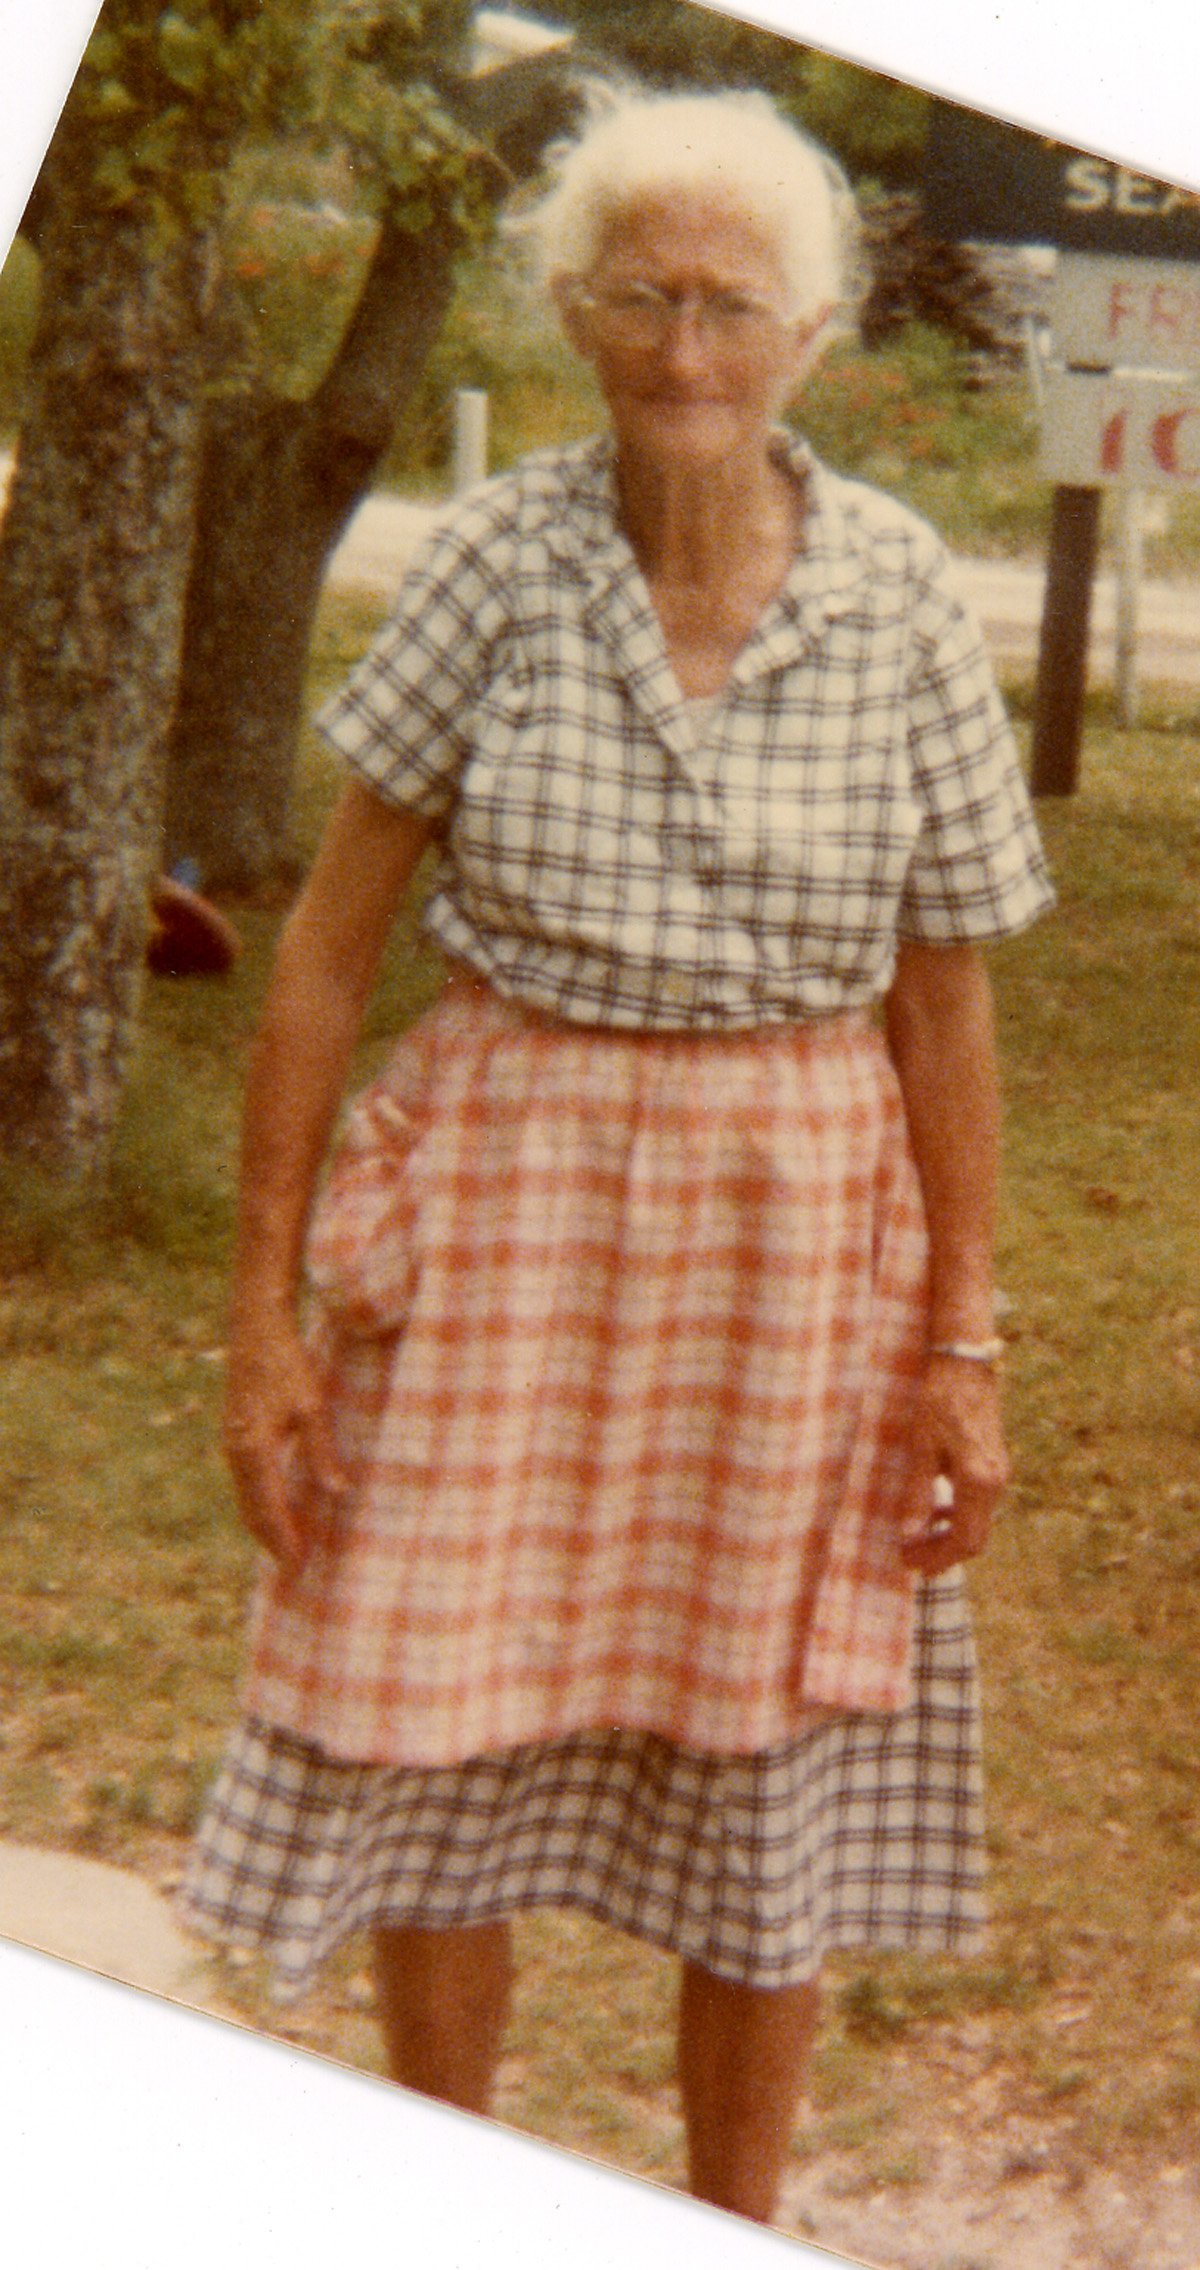 Ms. Alice Rose in her yard, 1970s.